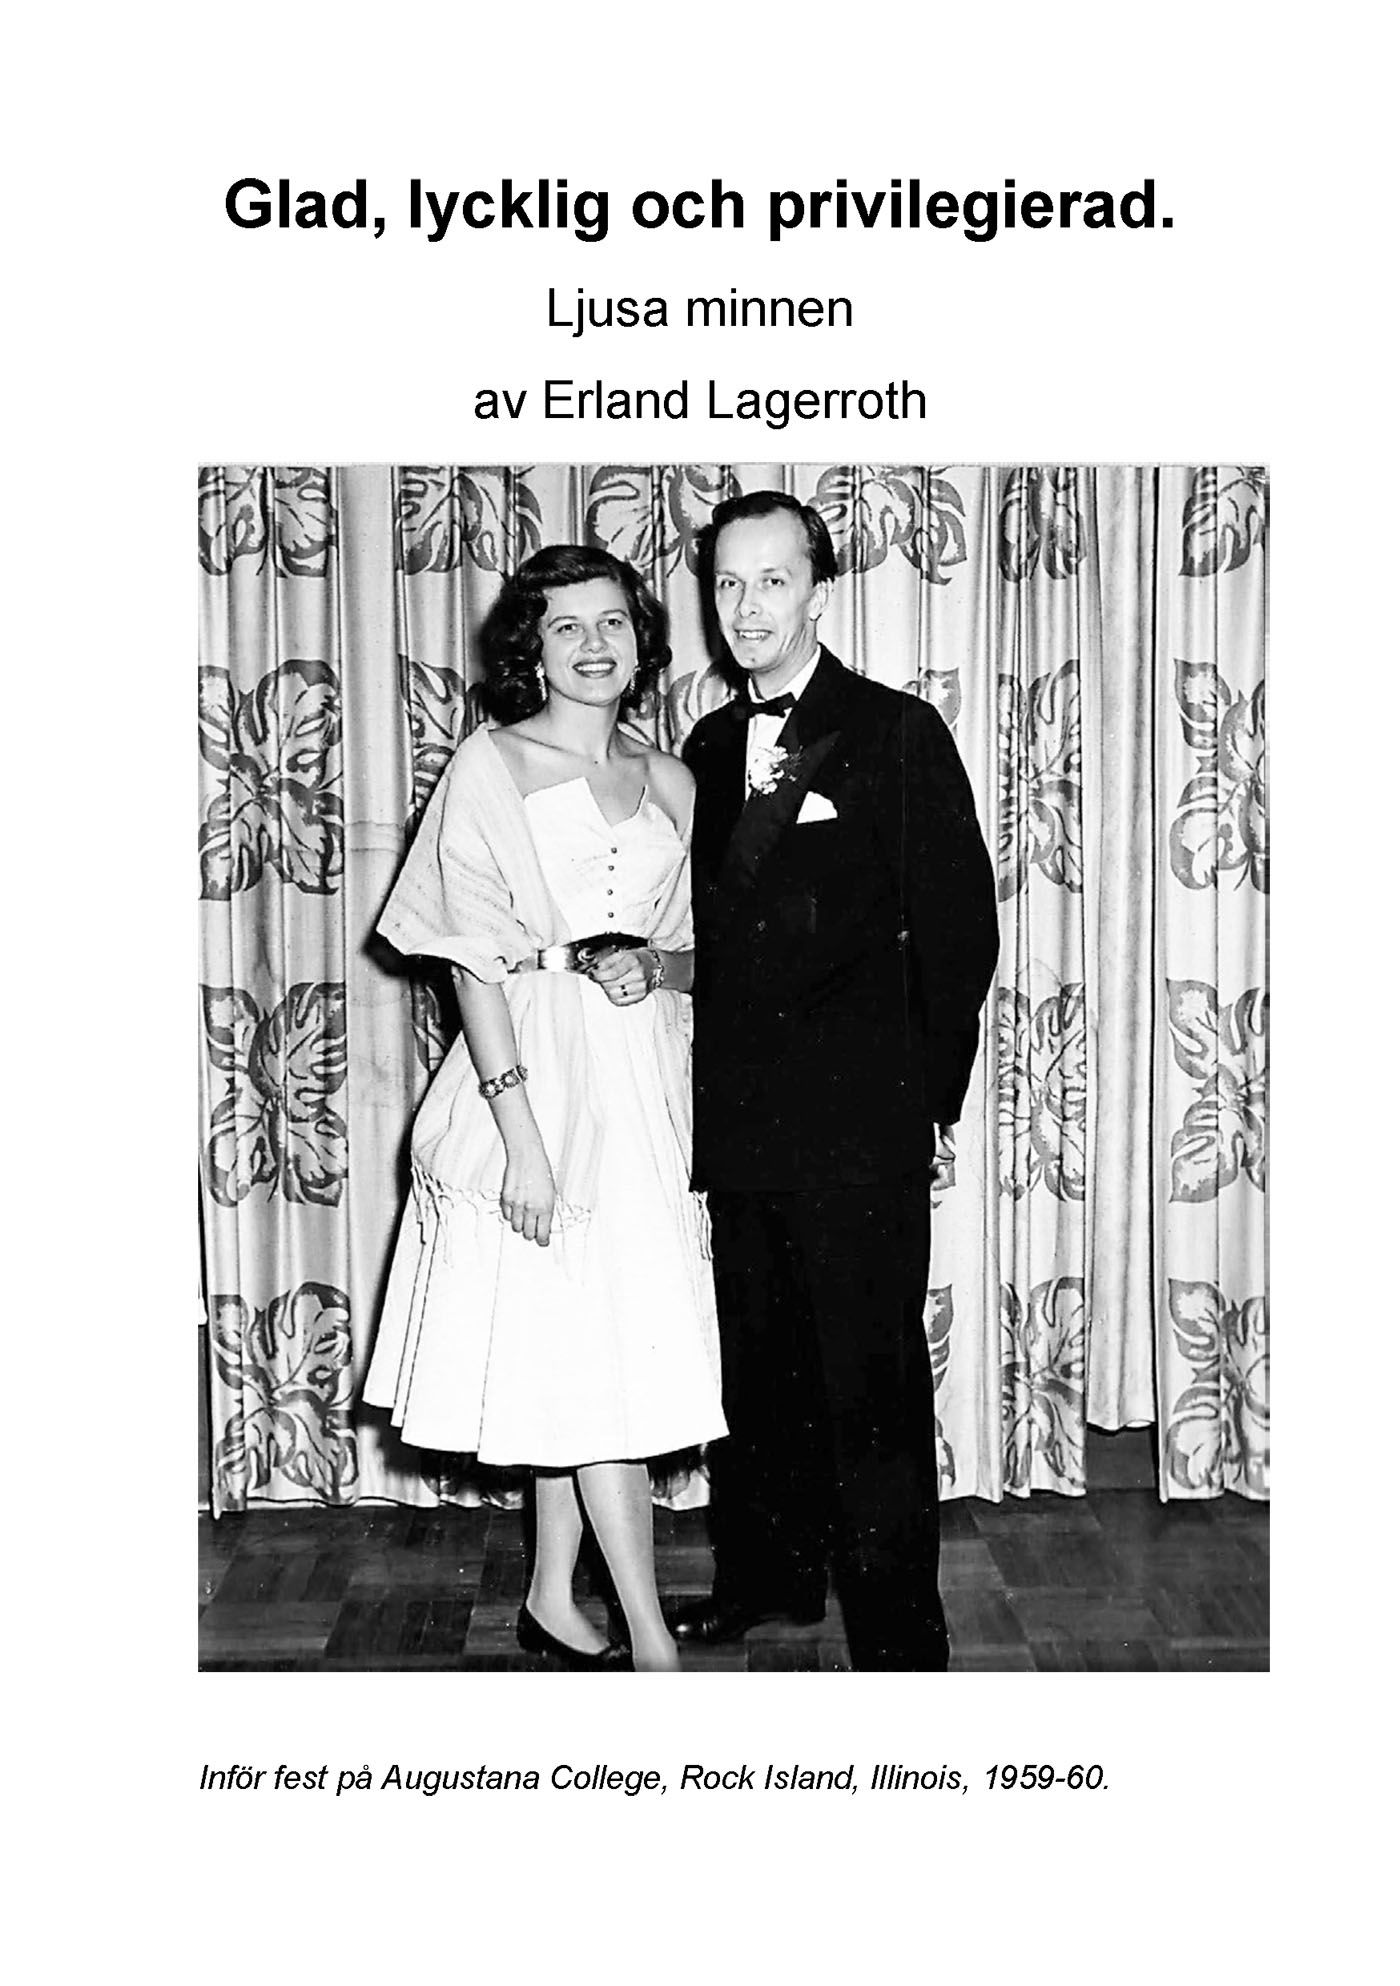 Glad, lycklig och privilegierad - Ljusa minnen, e-bog af Erland Lagerroth